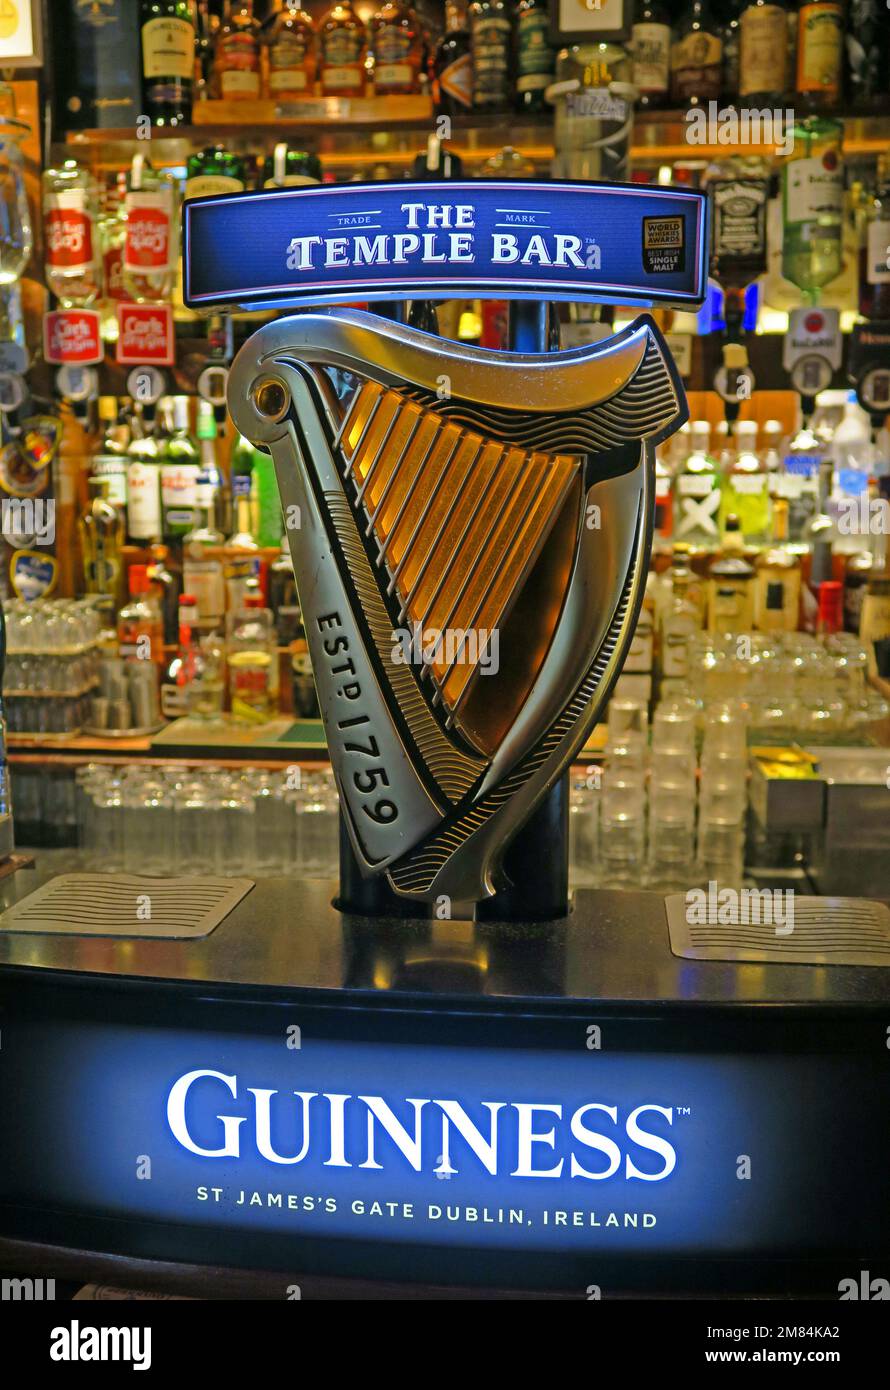 Rubinetto a forma di arpa firmato Guinness al Temple Bar, Dublino, Est 1840, 47-48 Temple Bar, Dublino 2, D02 N725, Eire, Irlanda Foto Stock